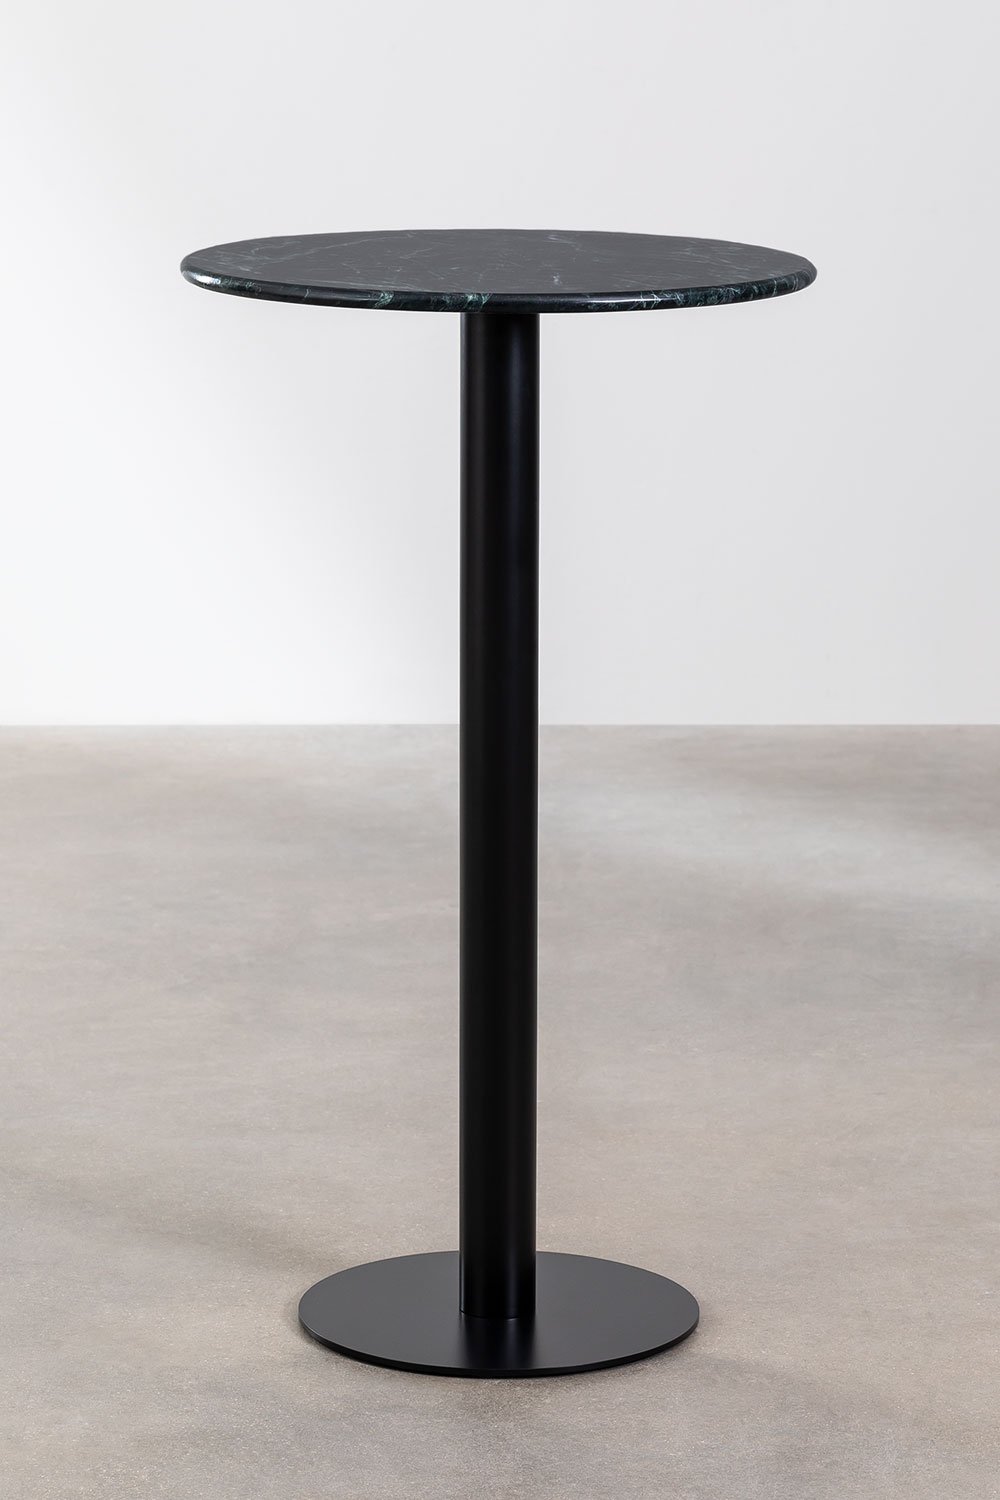 Ronde hoge bartafel in marmer (Ø60 cm) Rocher, galerij beeld 1